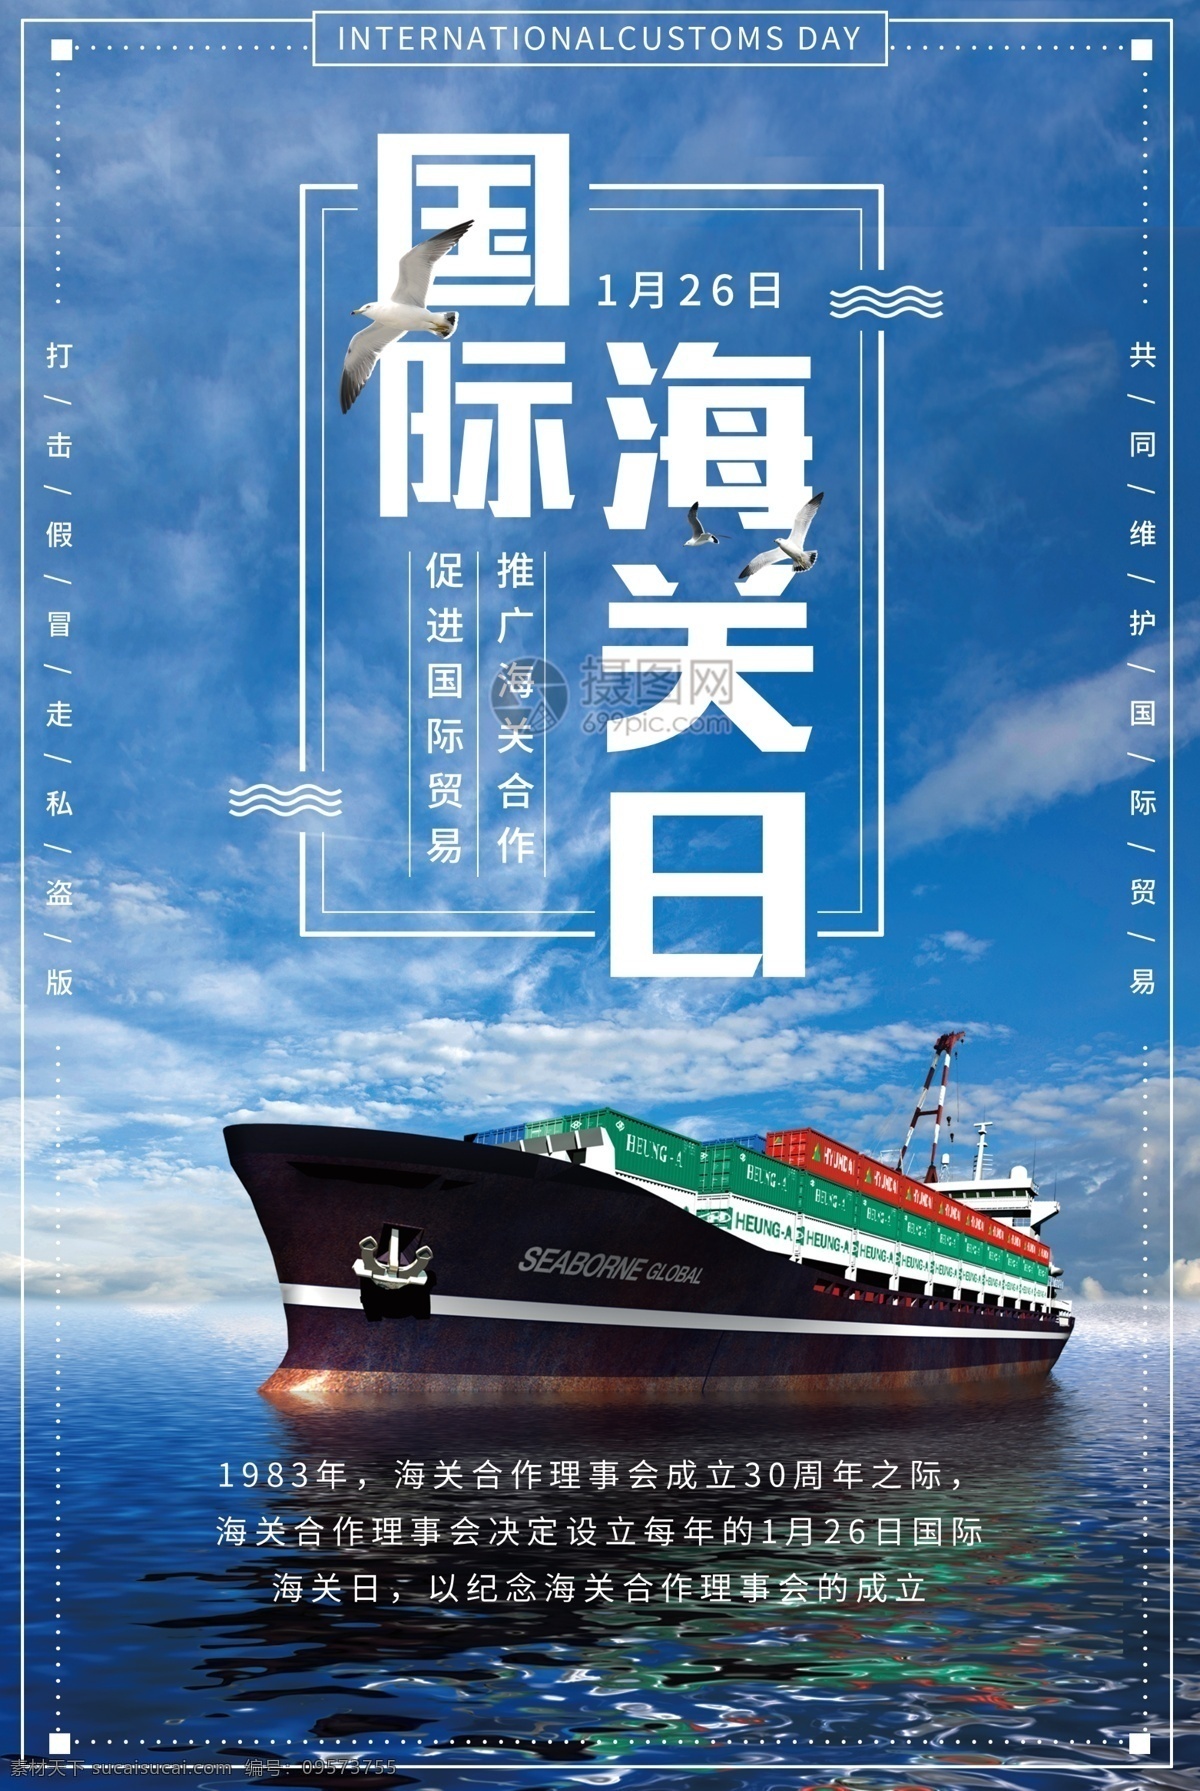 国际 海关 日 纪念 宣传海报 国际海关日 海上贸易 游轮 货轮 海关组织 节日 纪念日 国际合作 经济发展